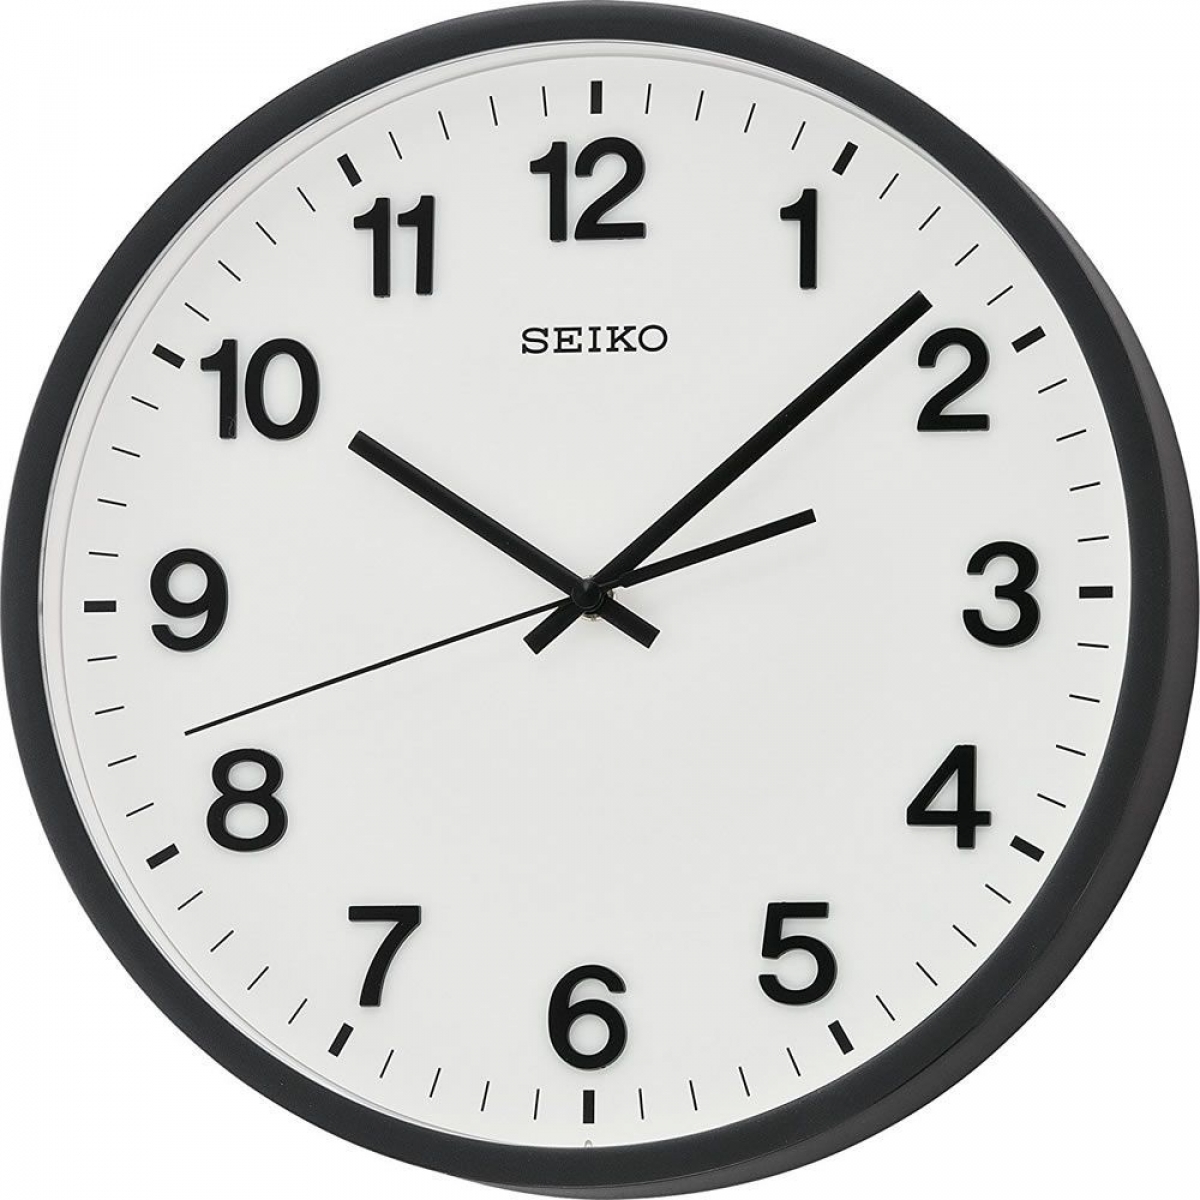 Настенные часы с минутами. Настенные часы Seiko qxa560an. Настенные часы Seiko qxa014an. Настенные часы Seiko qxa020a. Настенные часы Seiko qxa728k.